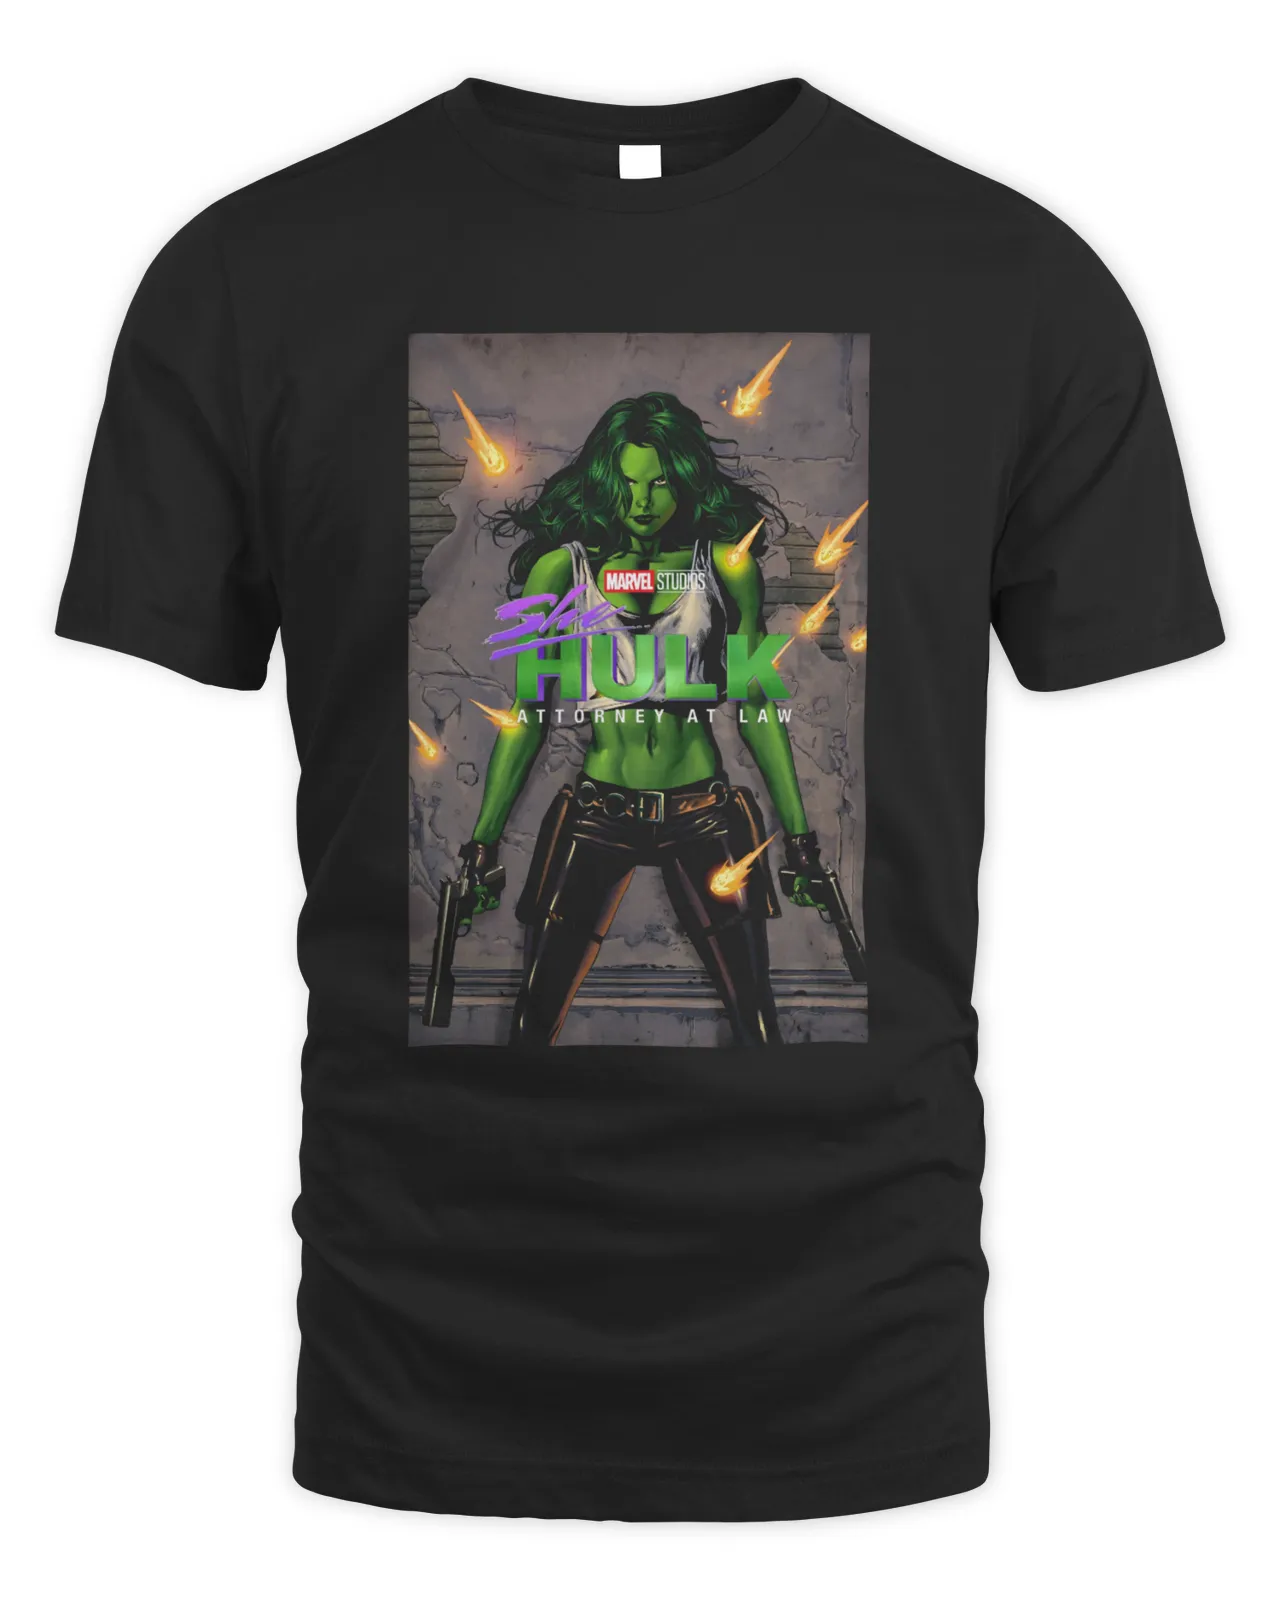 https://senprints.com/vi/she-hulk-t-shirt?spsid=101692